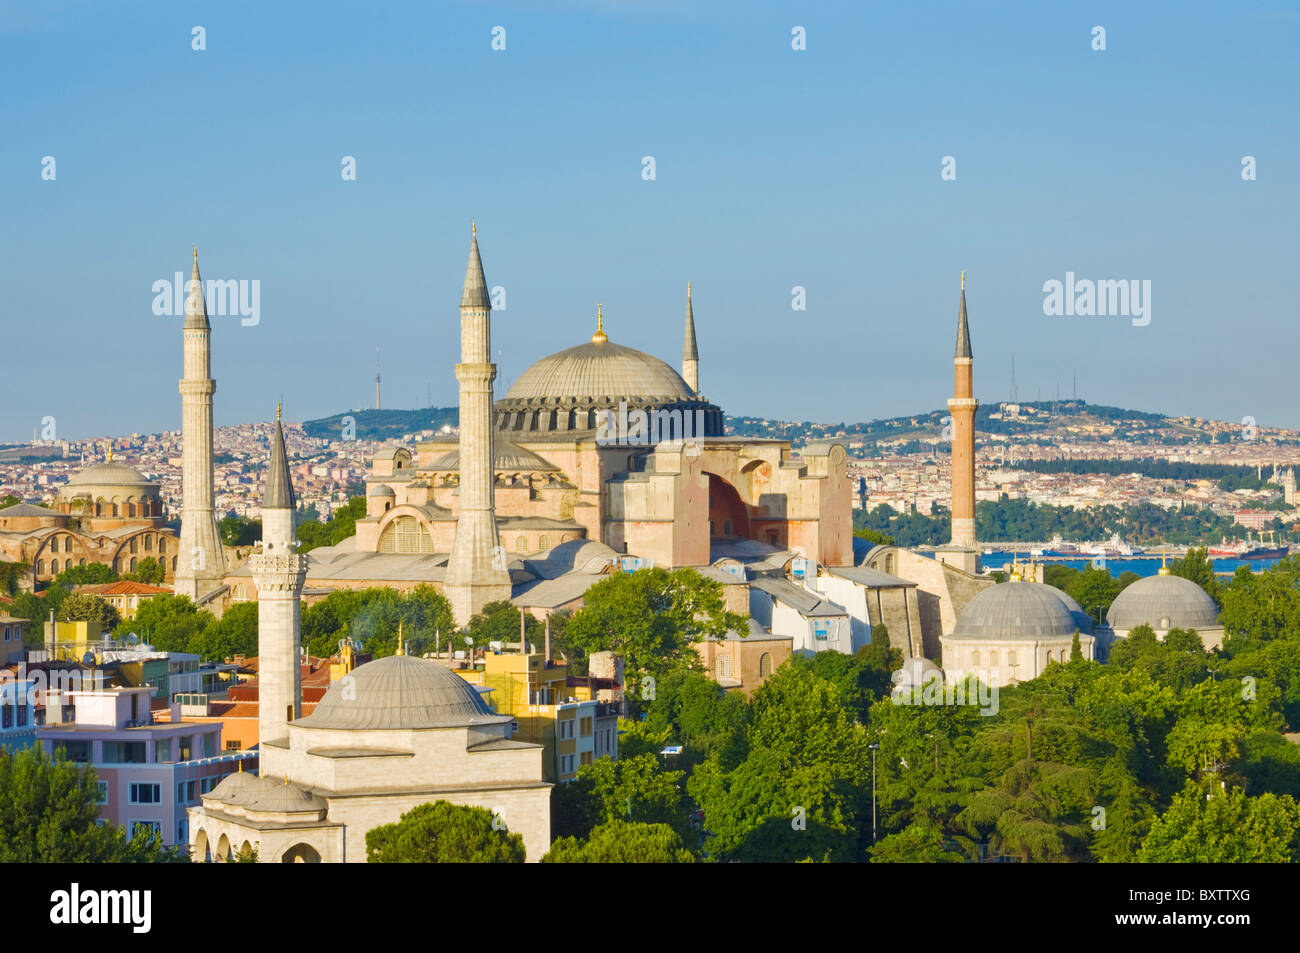 Die Hagia Sophia Aya Sofya oder die Kirche der Heiligen Weisheit ist eine byzantinische Denkmal aus 532AD, Sultanahmet, Istanbul, Türkei Stockfoto